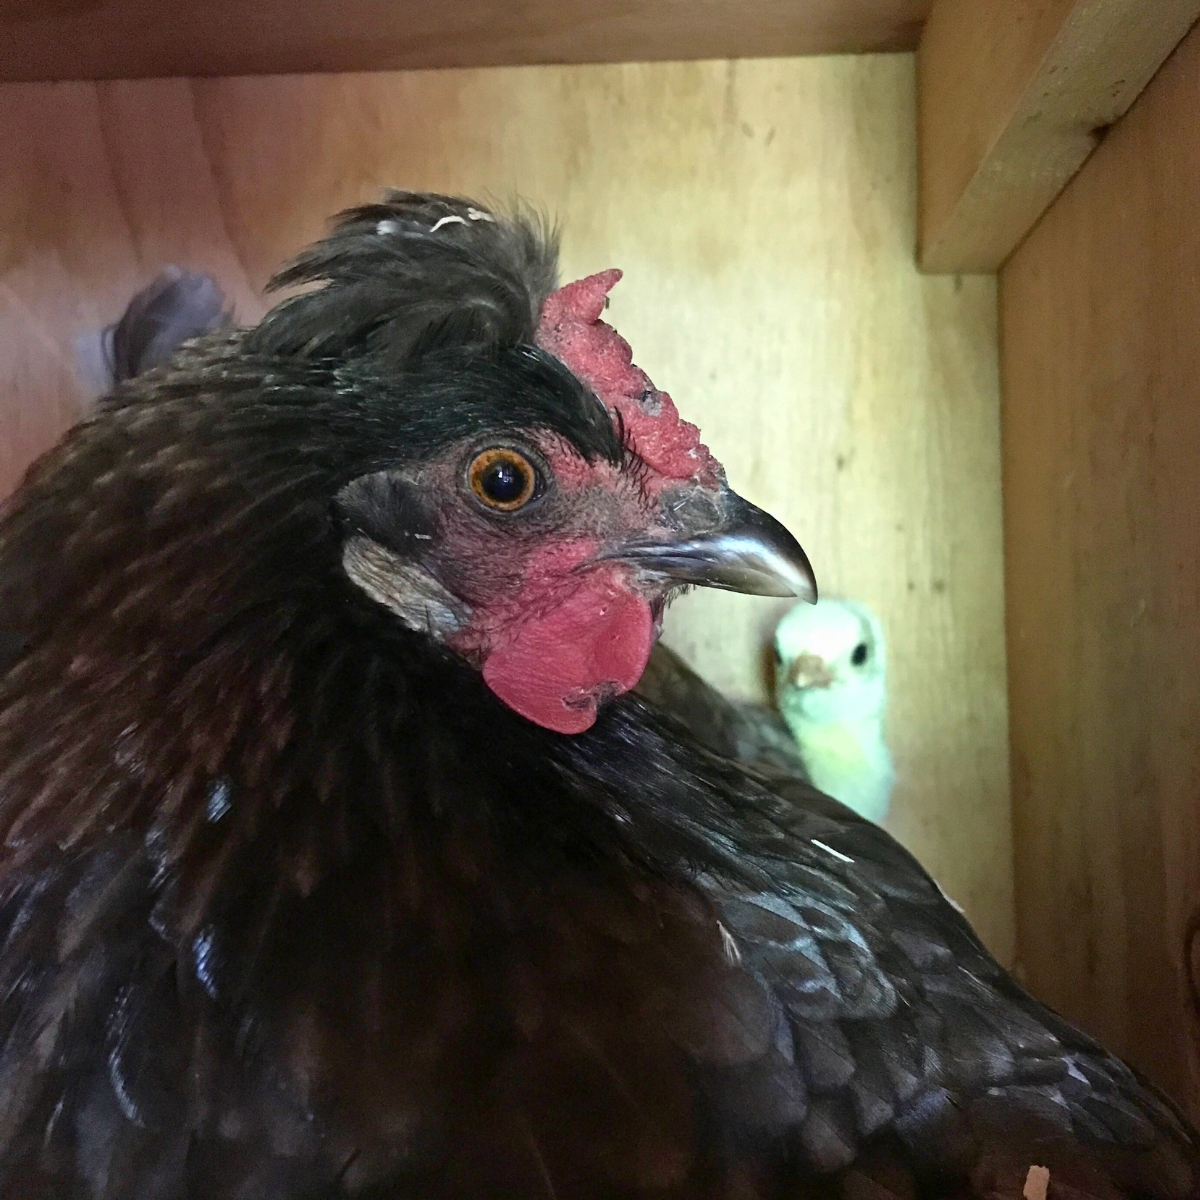 Mother chicken hen with baby turkey